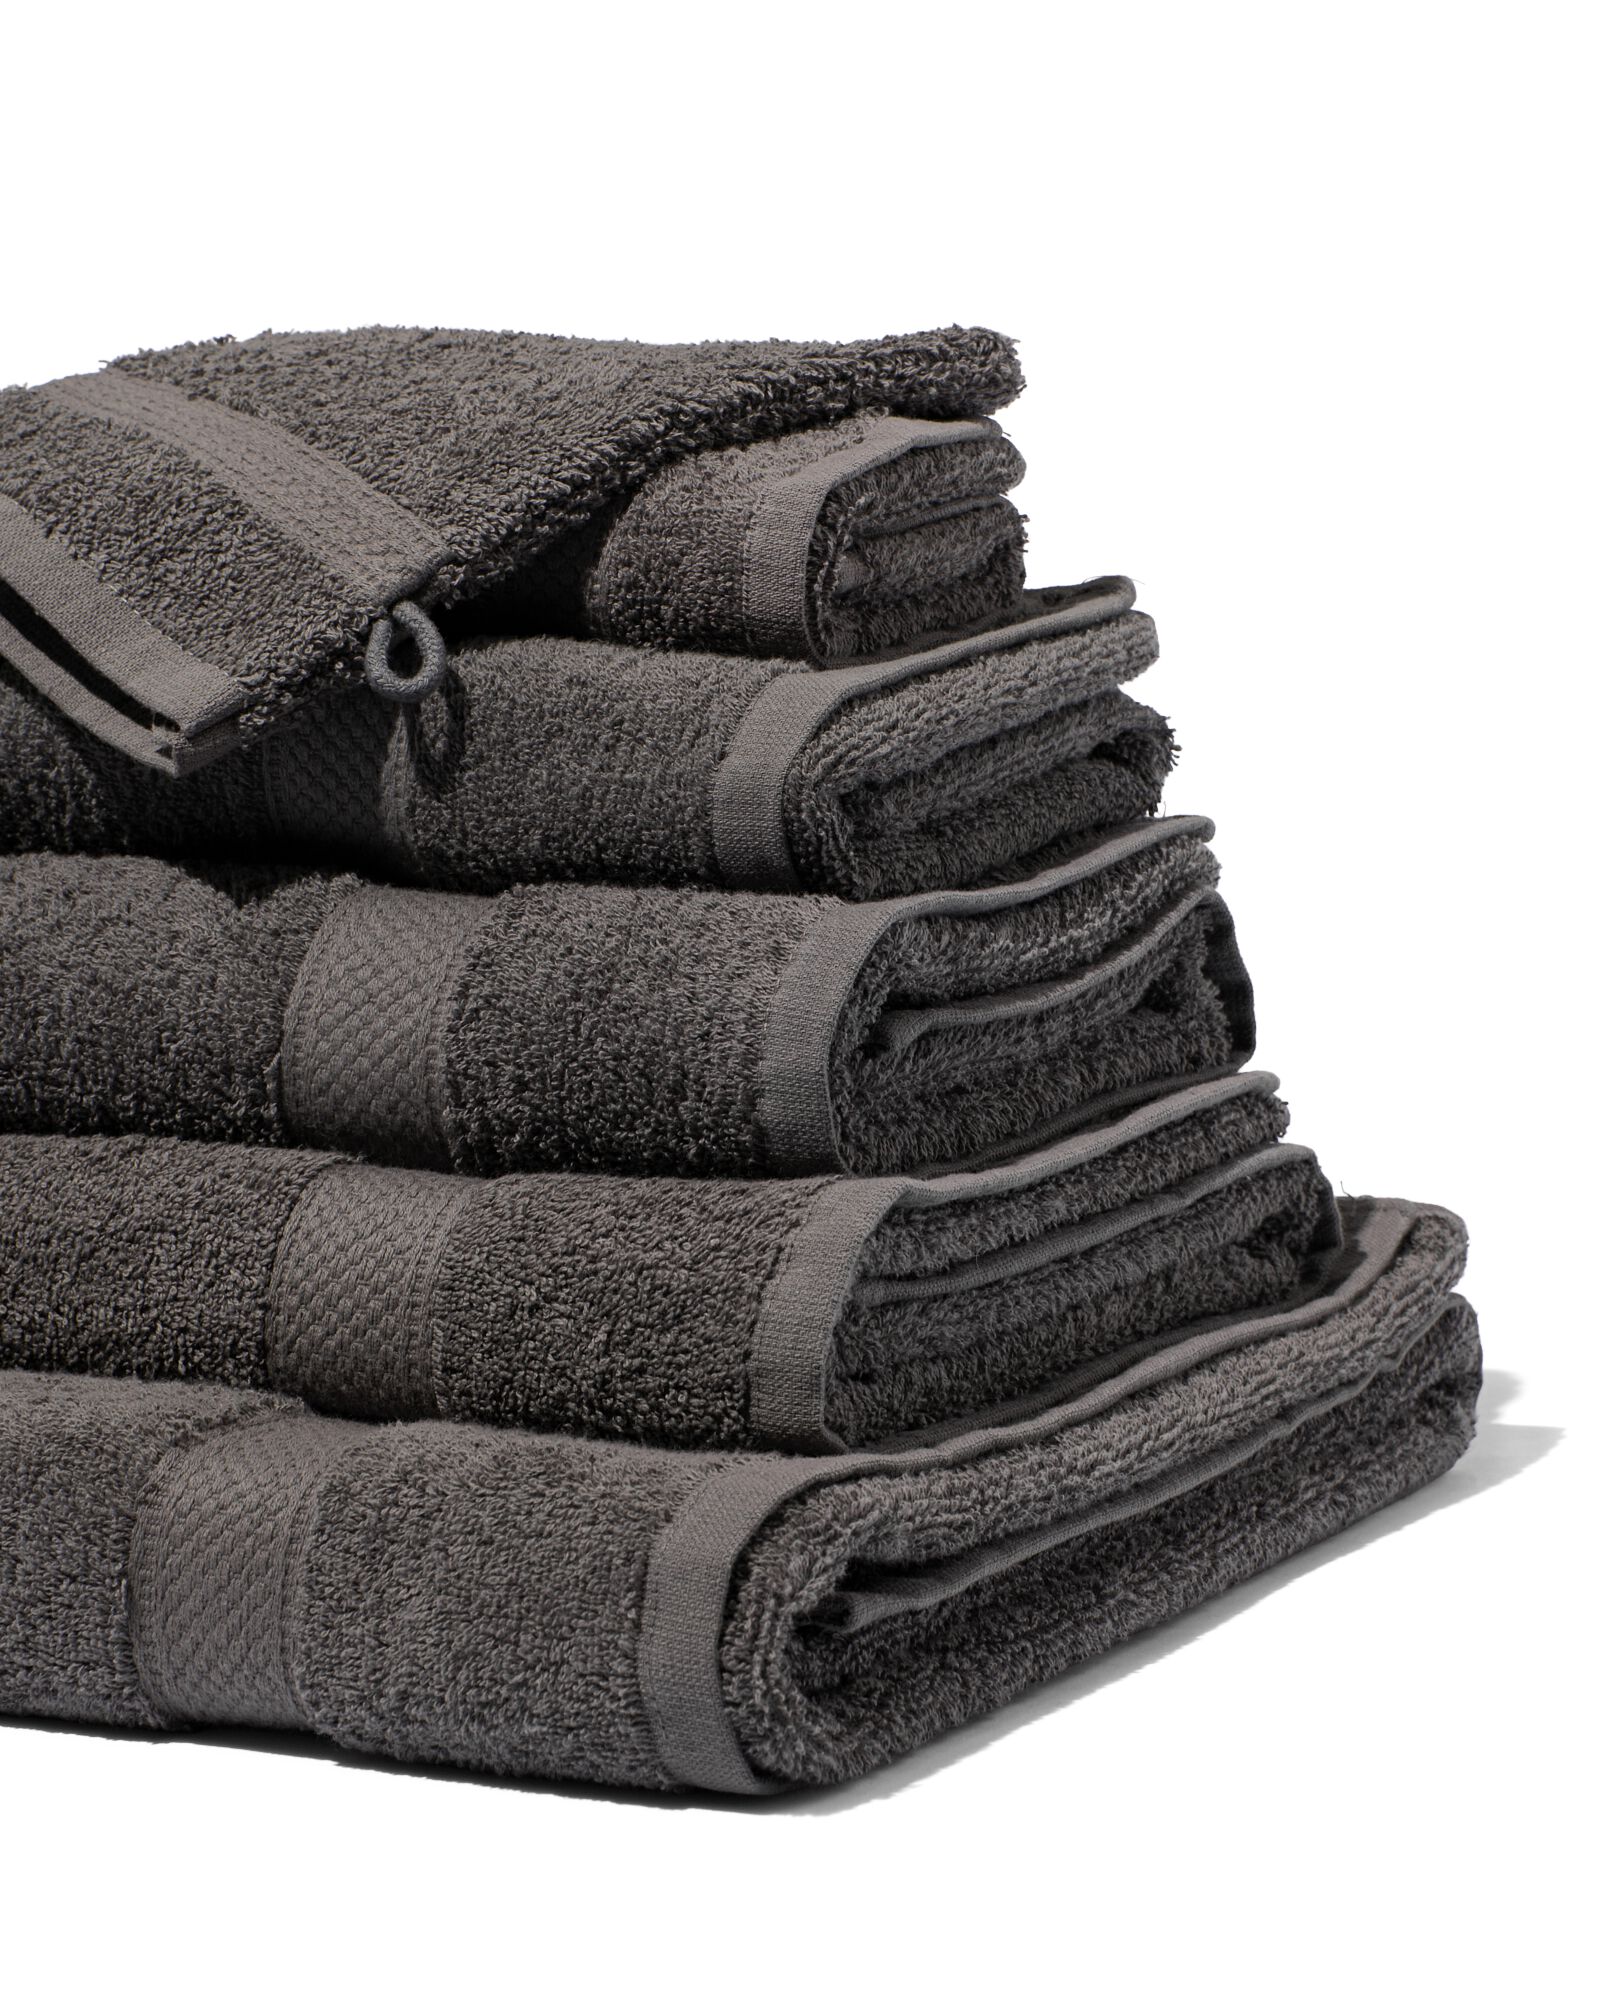 handdoek - 60 x 110 cm - zware kwaliteit - donkergrijs donkergrijs handdoek 60 x 110 - 5213602 - HEMA